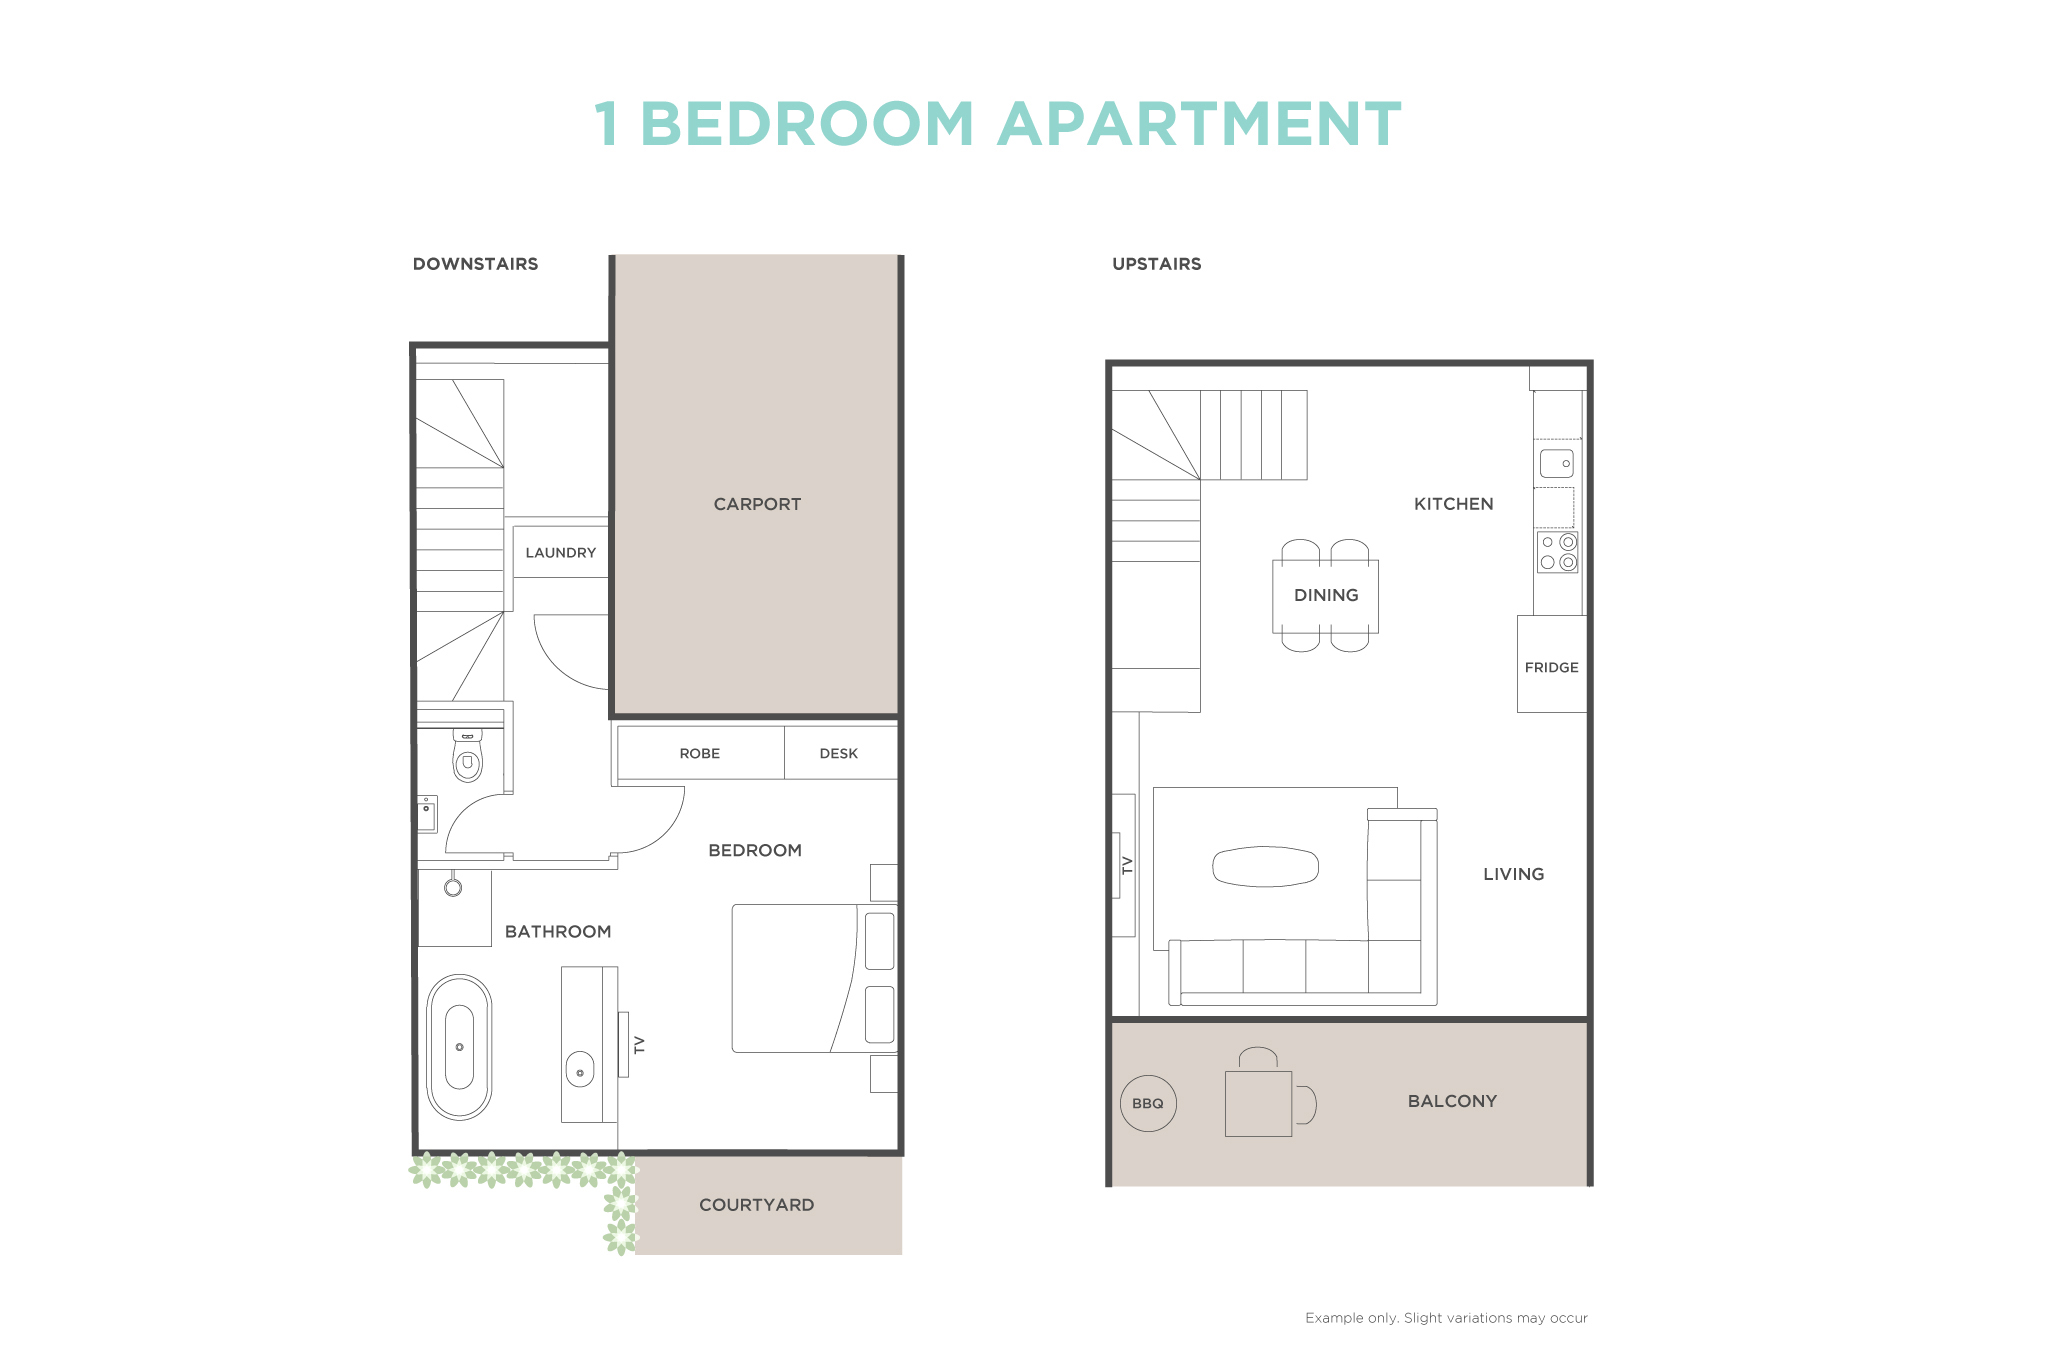 1 Bedroom Apartment floor plan